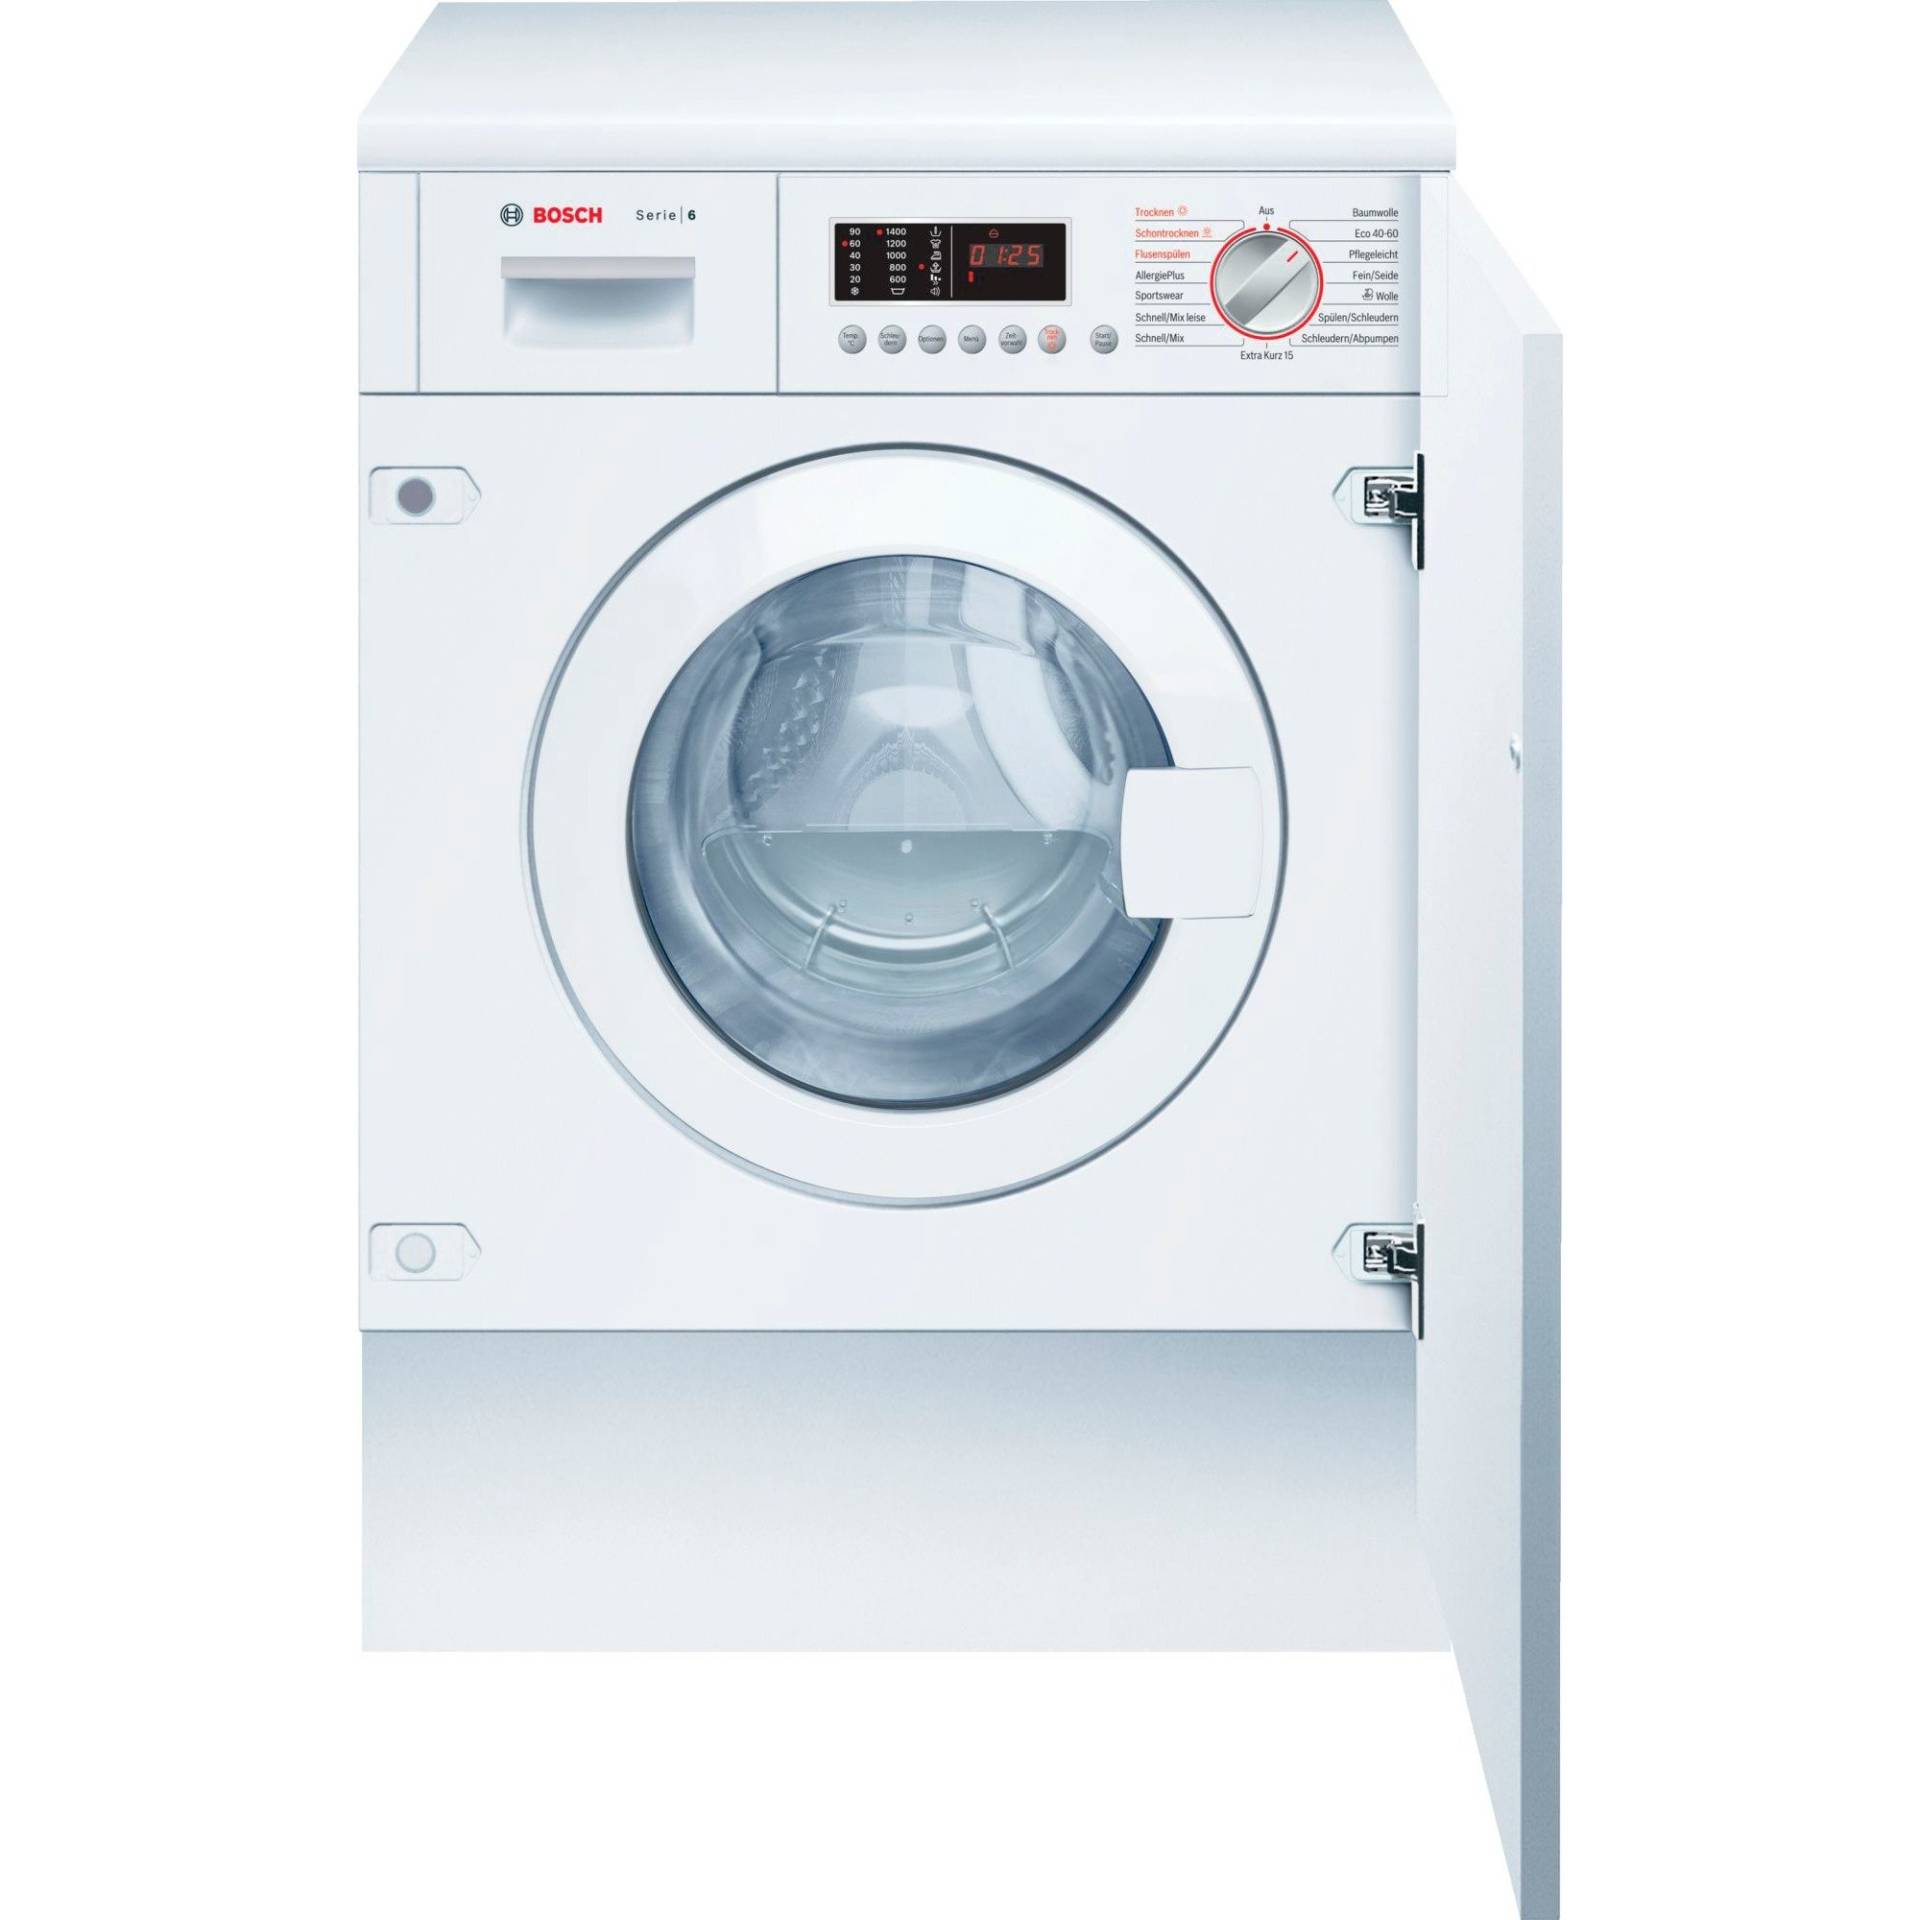 WKD28543 Serie 6, Waschtrockner von Bosch